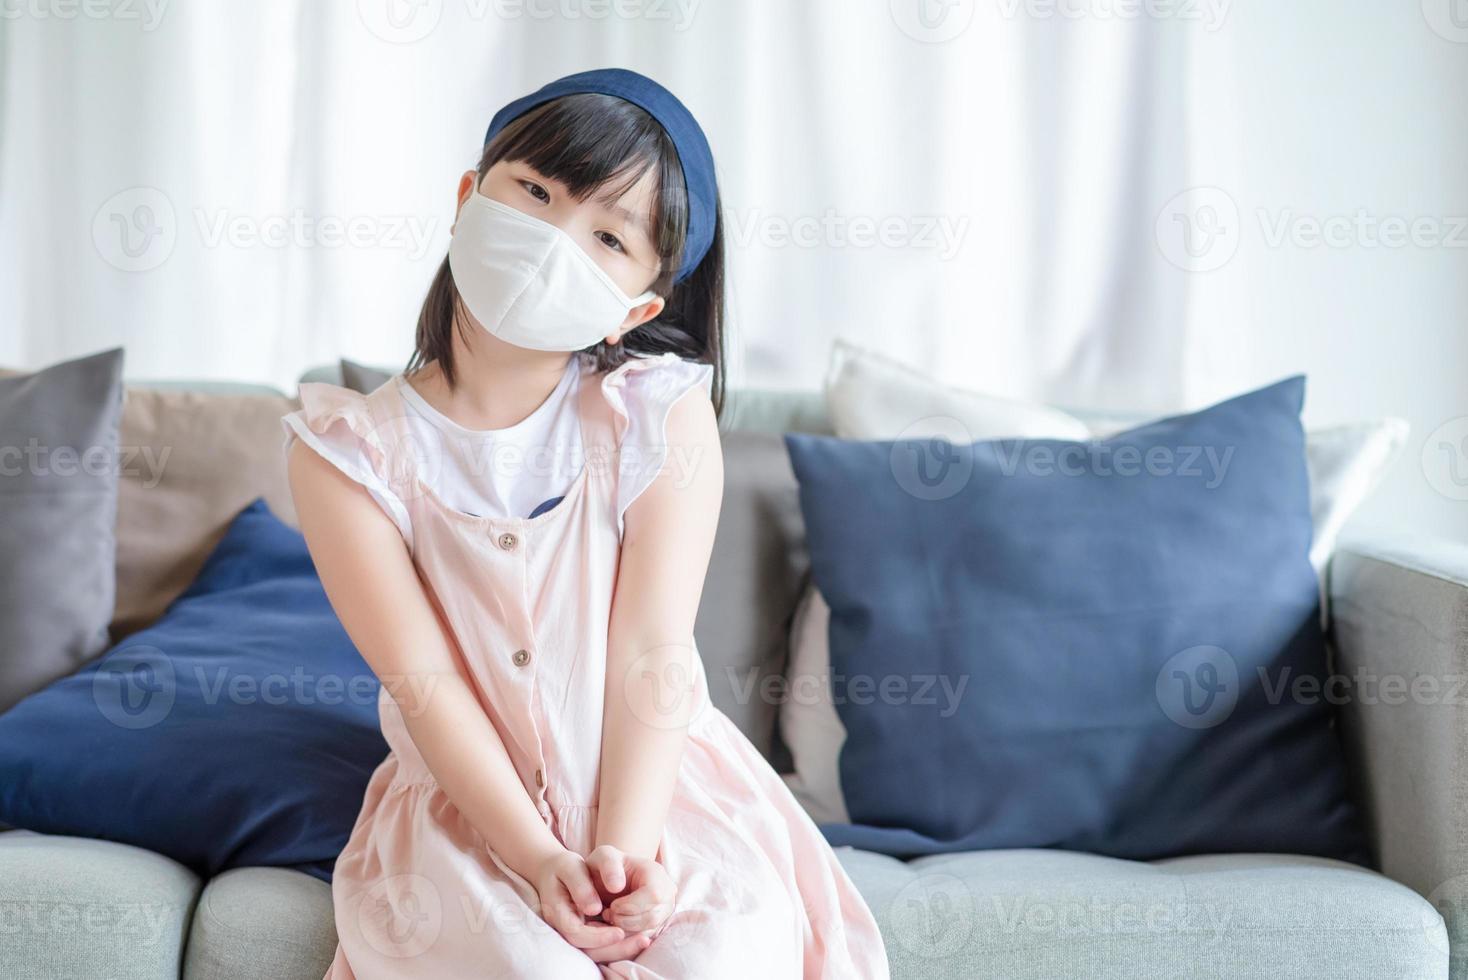 ragazza asiatica carina che indossa una maschera igienica per prevenire il coronavirus o covid-19 foto